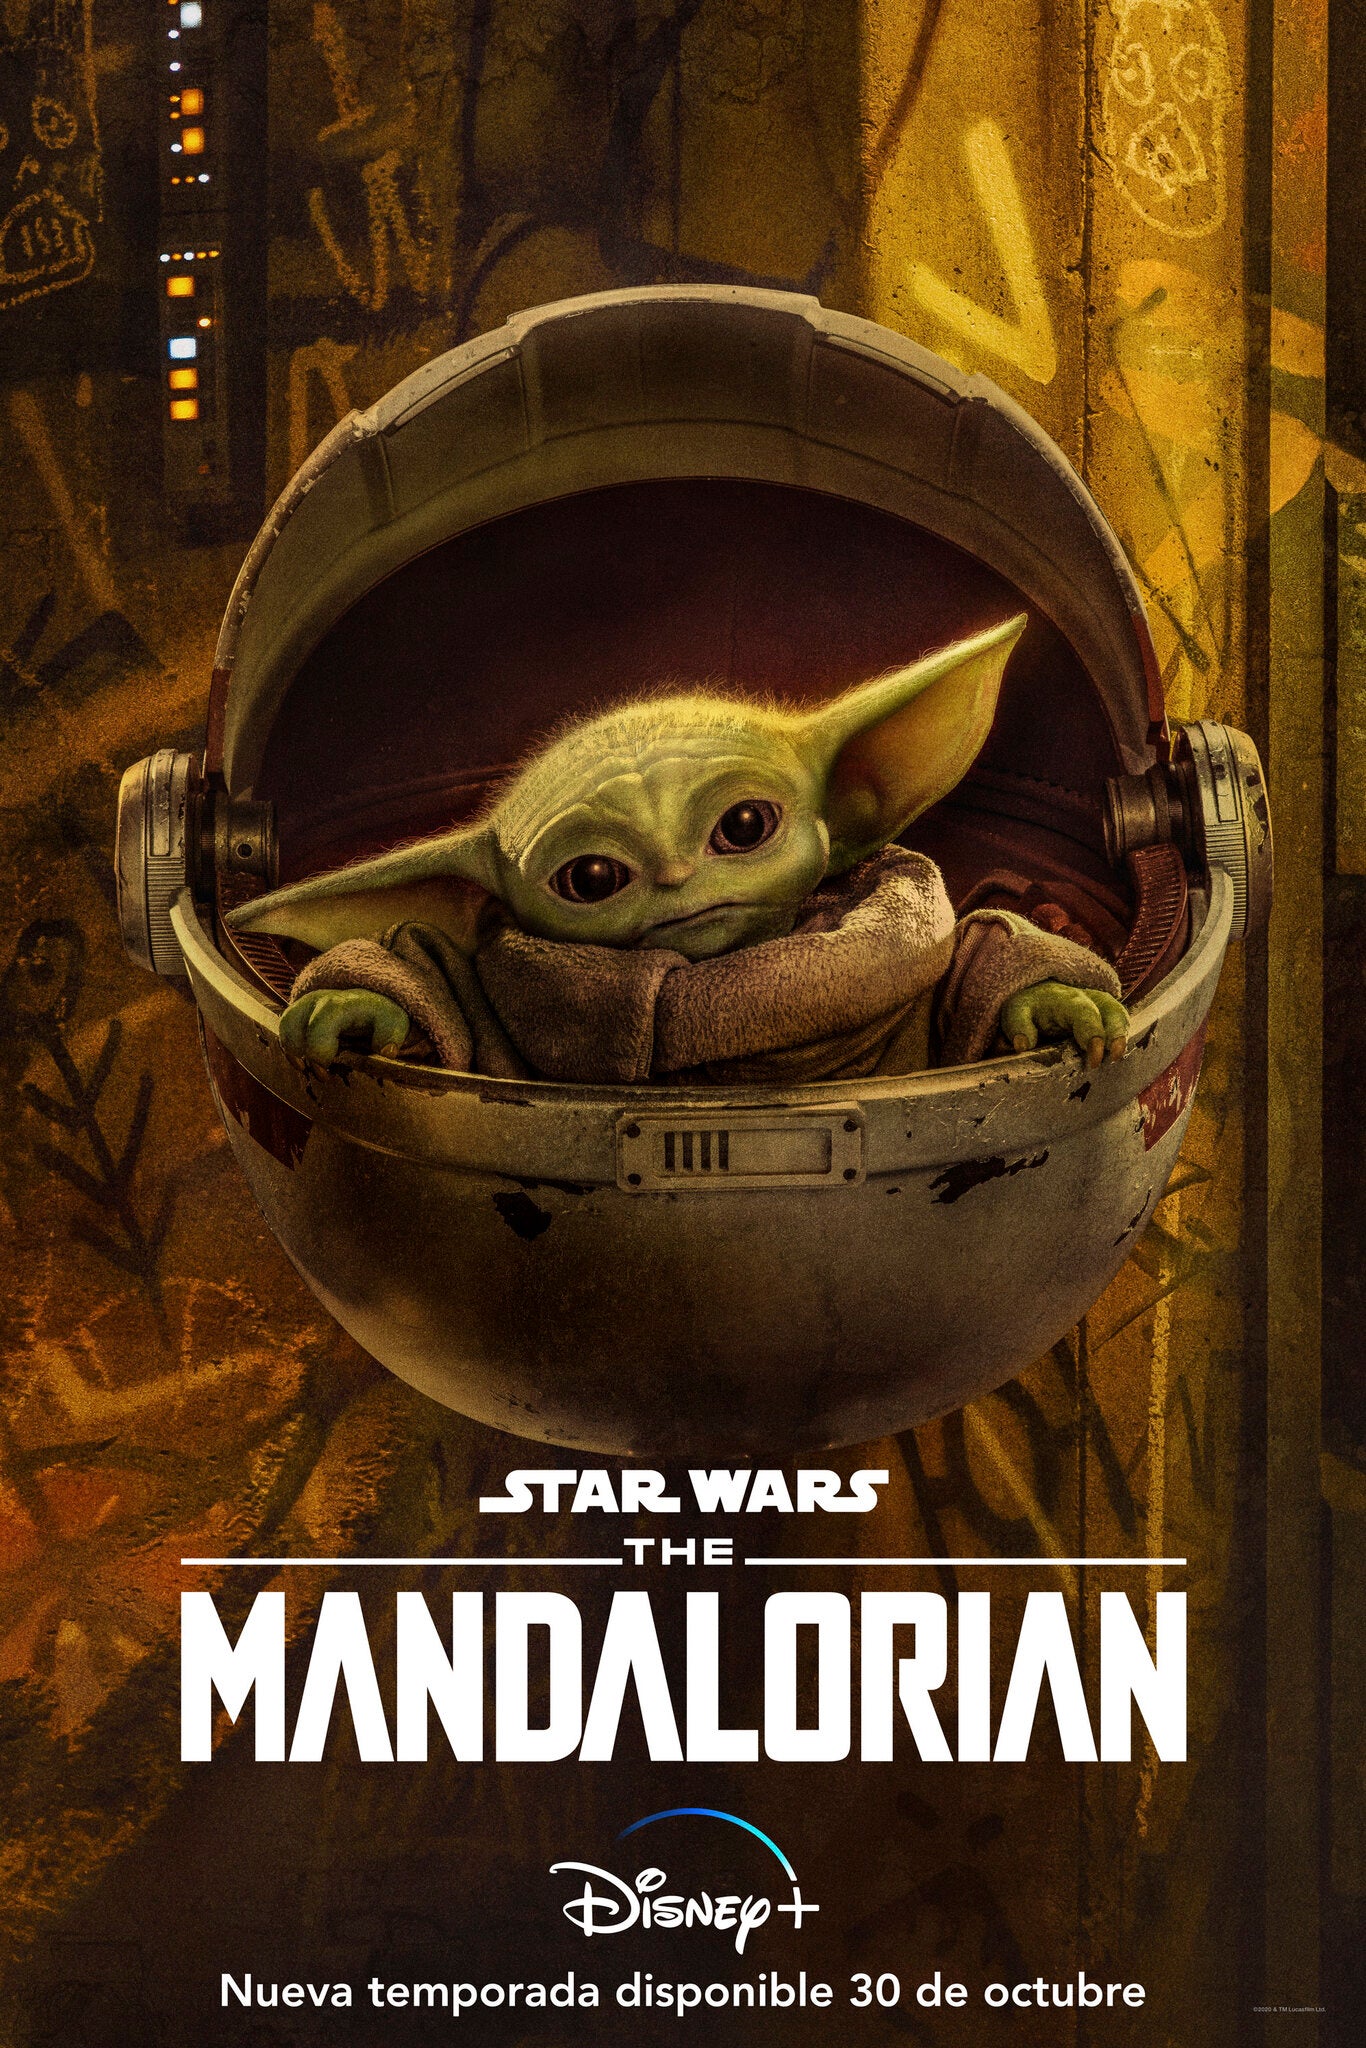 'El Niño' o 'Baby Yoda' es el pivote sobre el que gira toda la trama de 'The Mandalorian'.